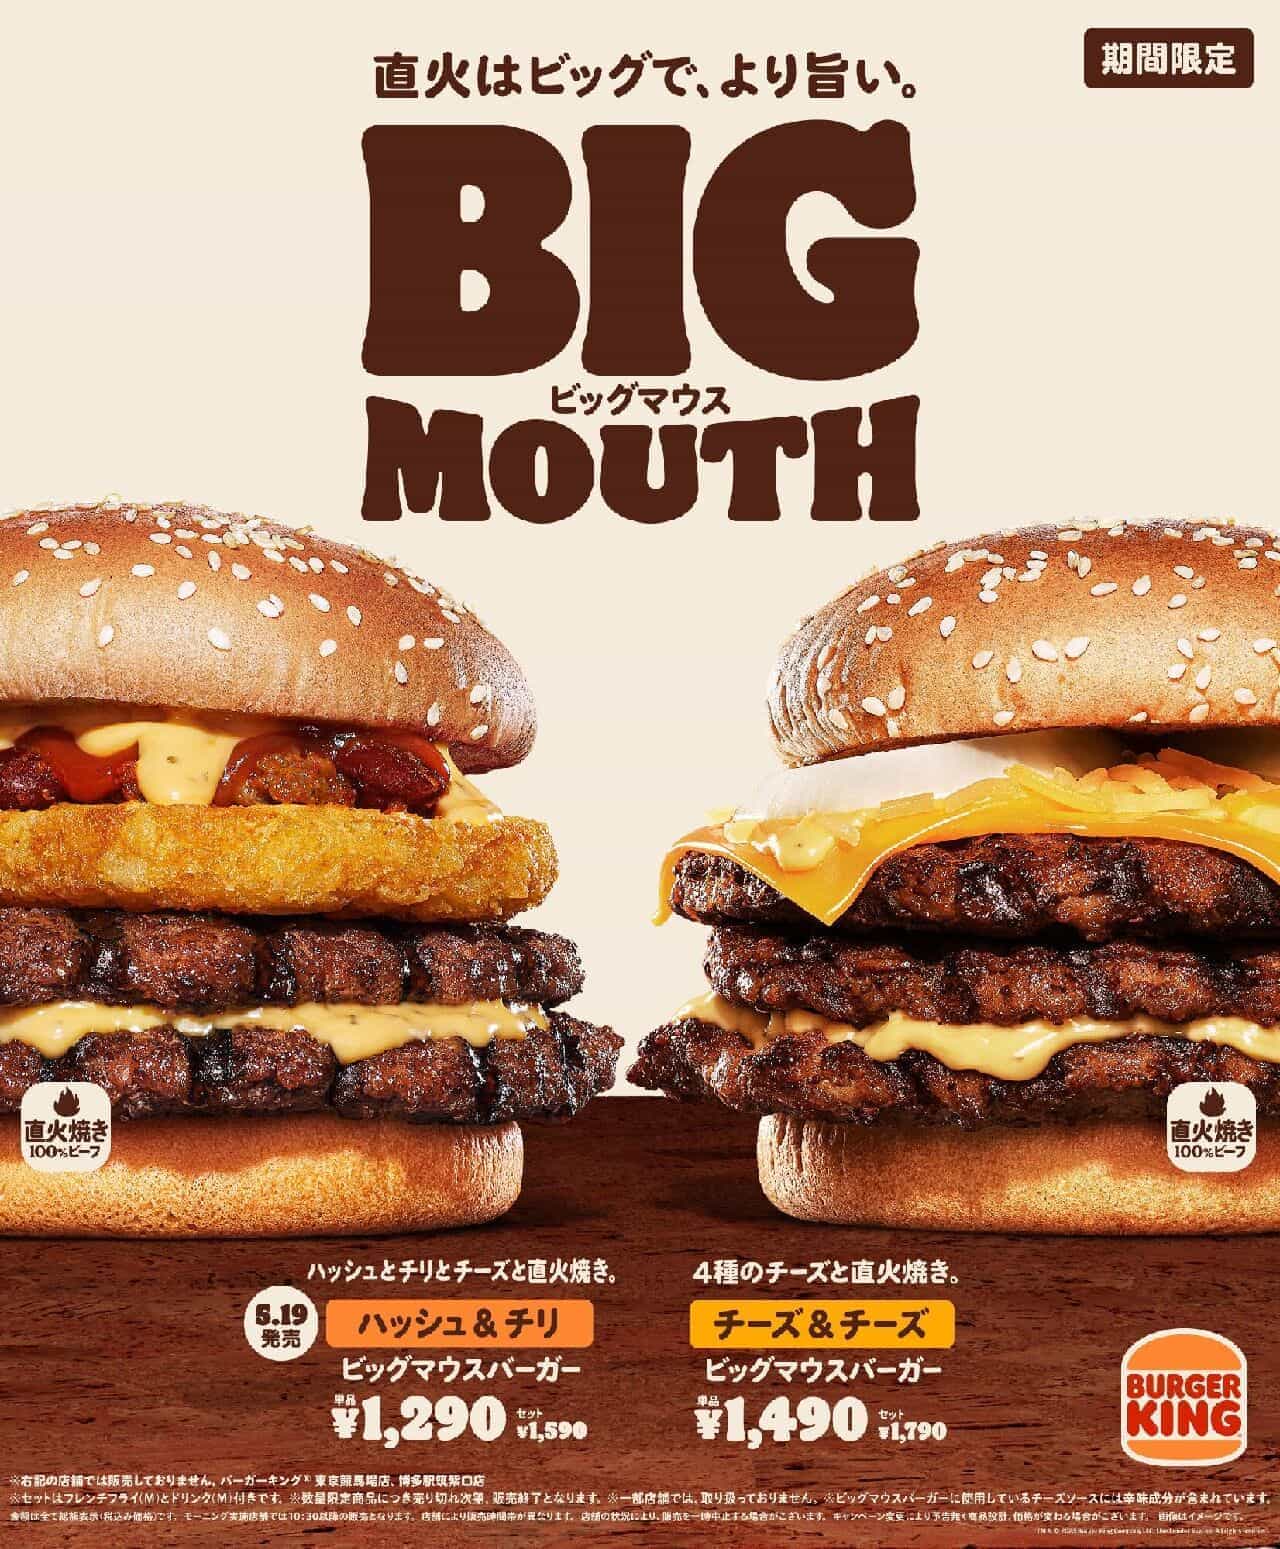 Burger King "Hash & Chili Big Mouth Burger